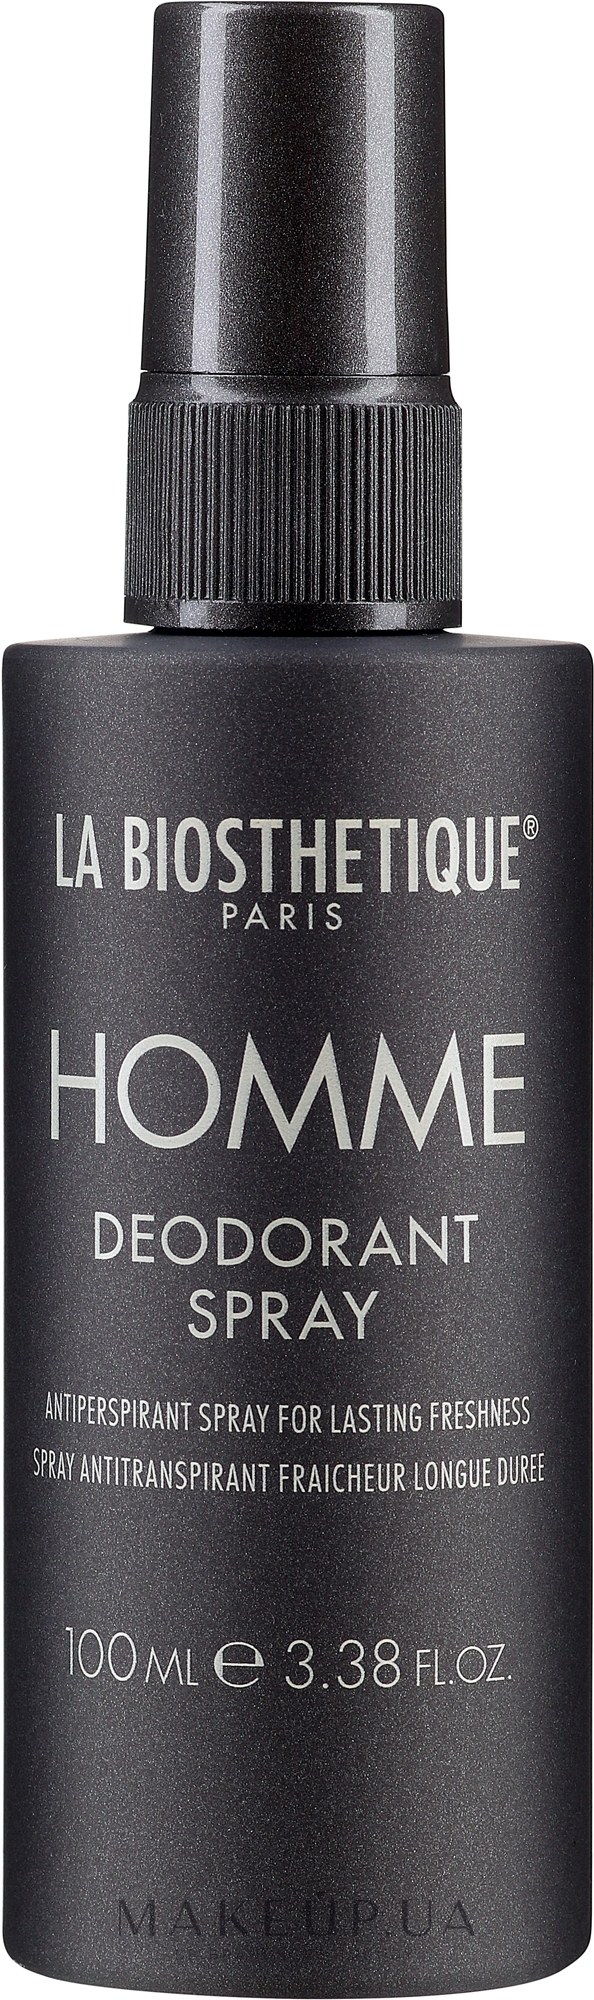 Освежающий дезодорант-спрей длительного действия - La Biosthetique Homme Deodorant Spray — фото 100ml